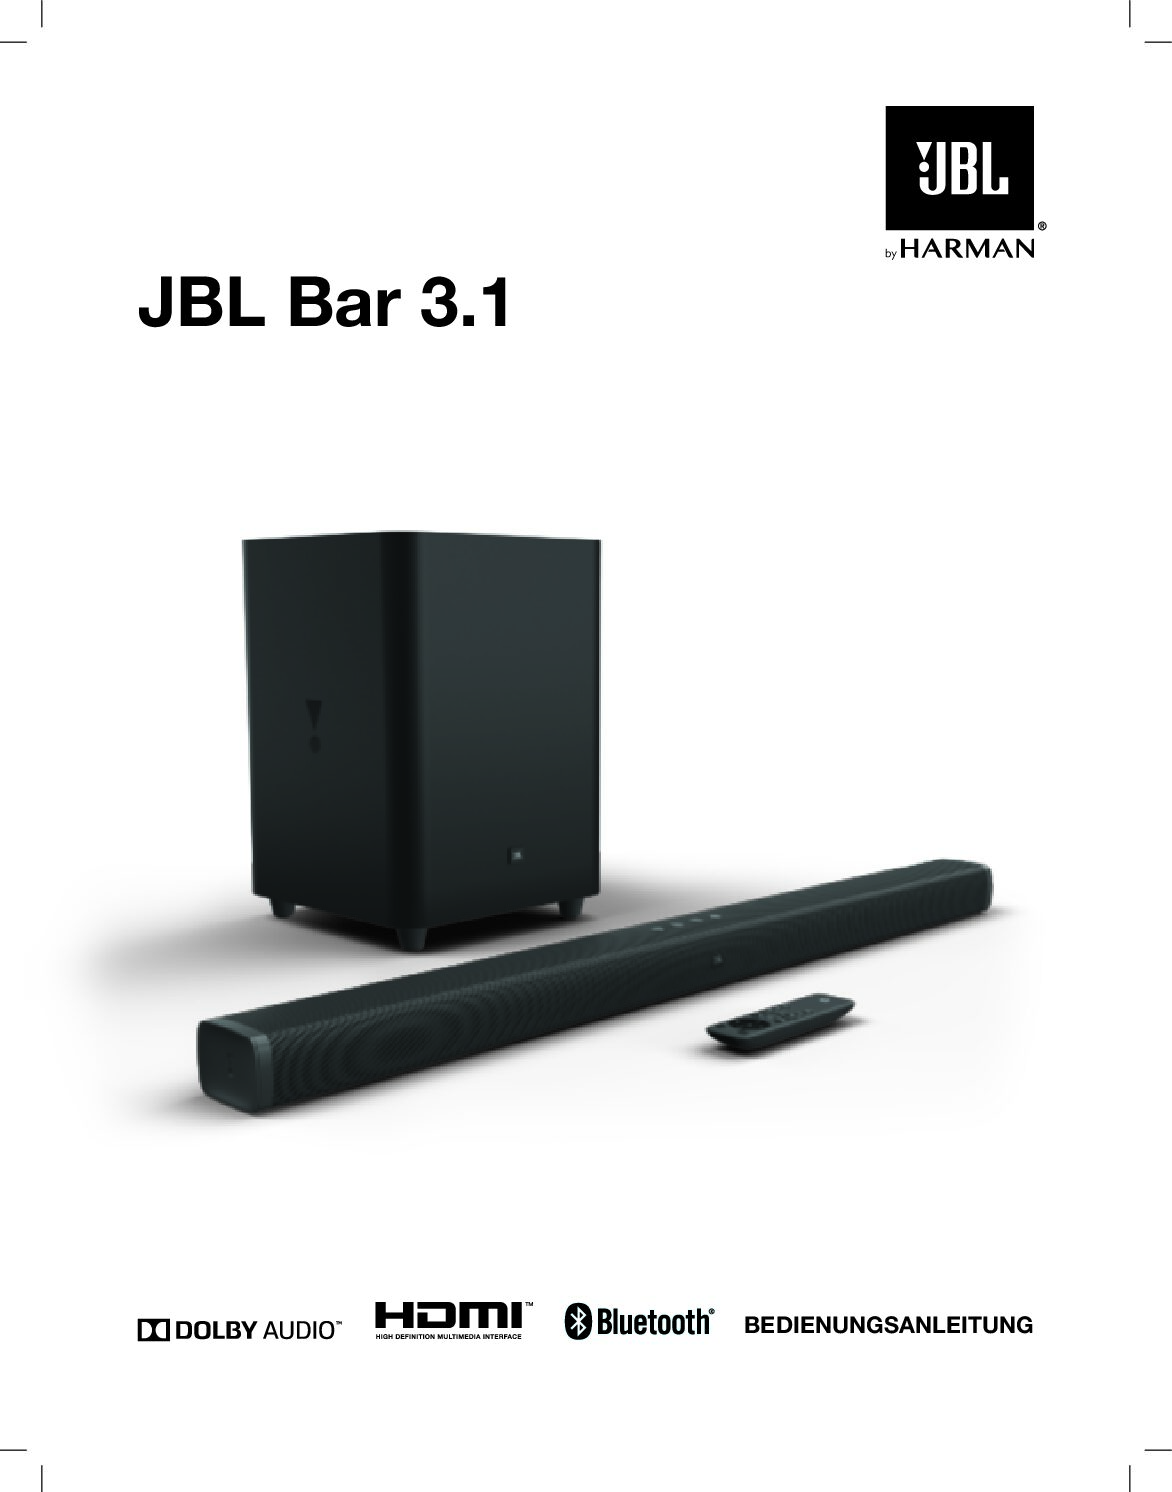 JBL Bar 3.1 Bedienungsanleitung